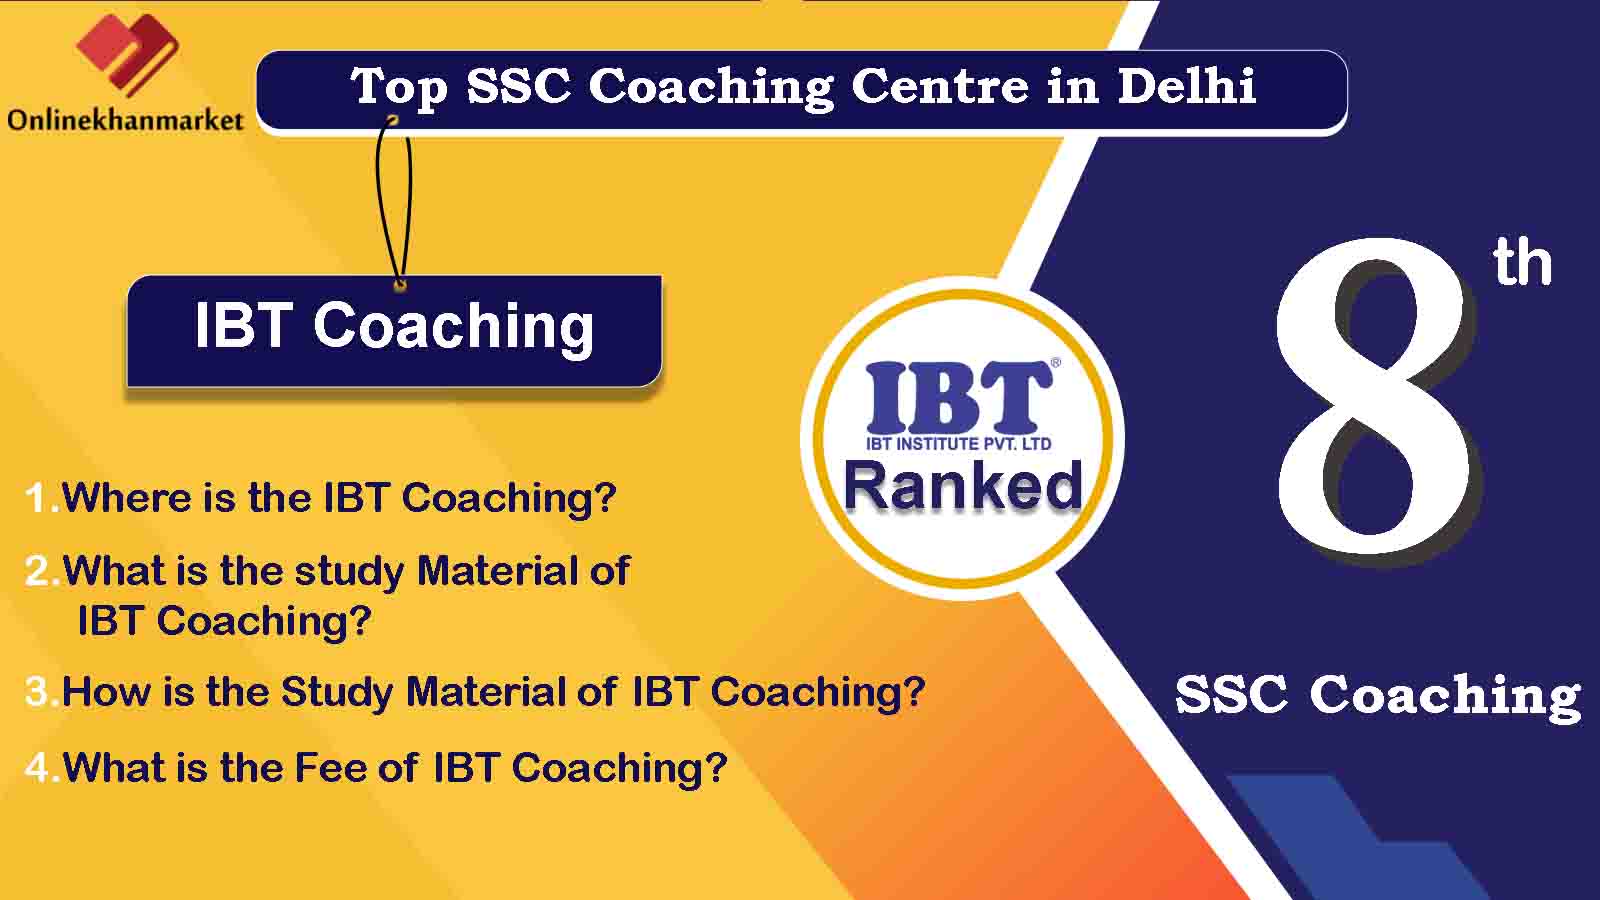 Top IAS Coaching in Delhi